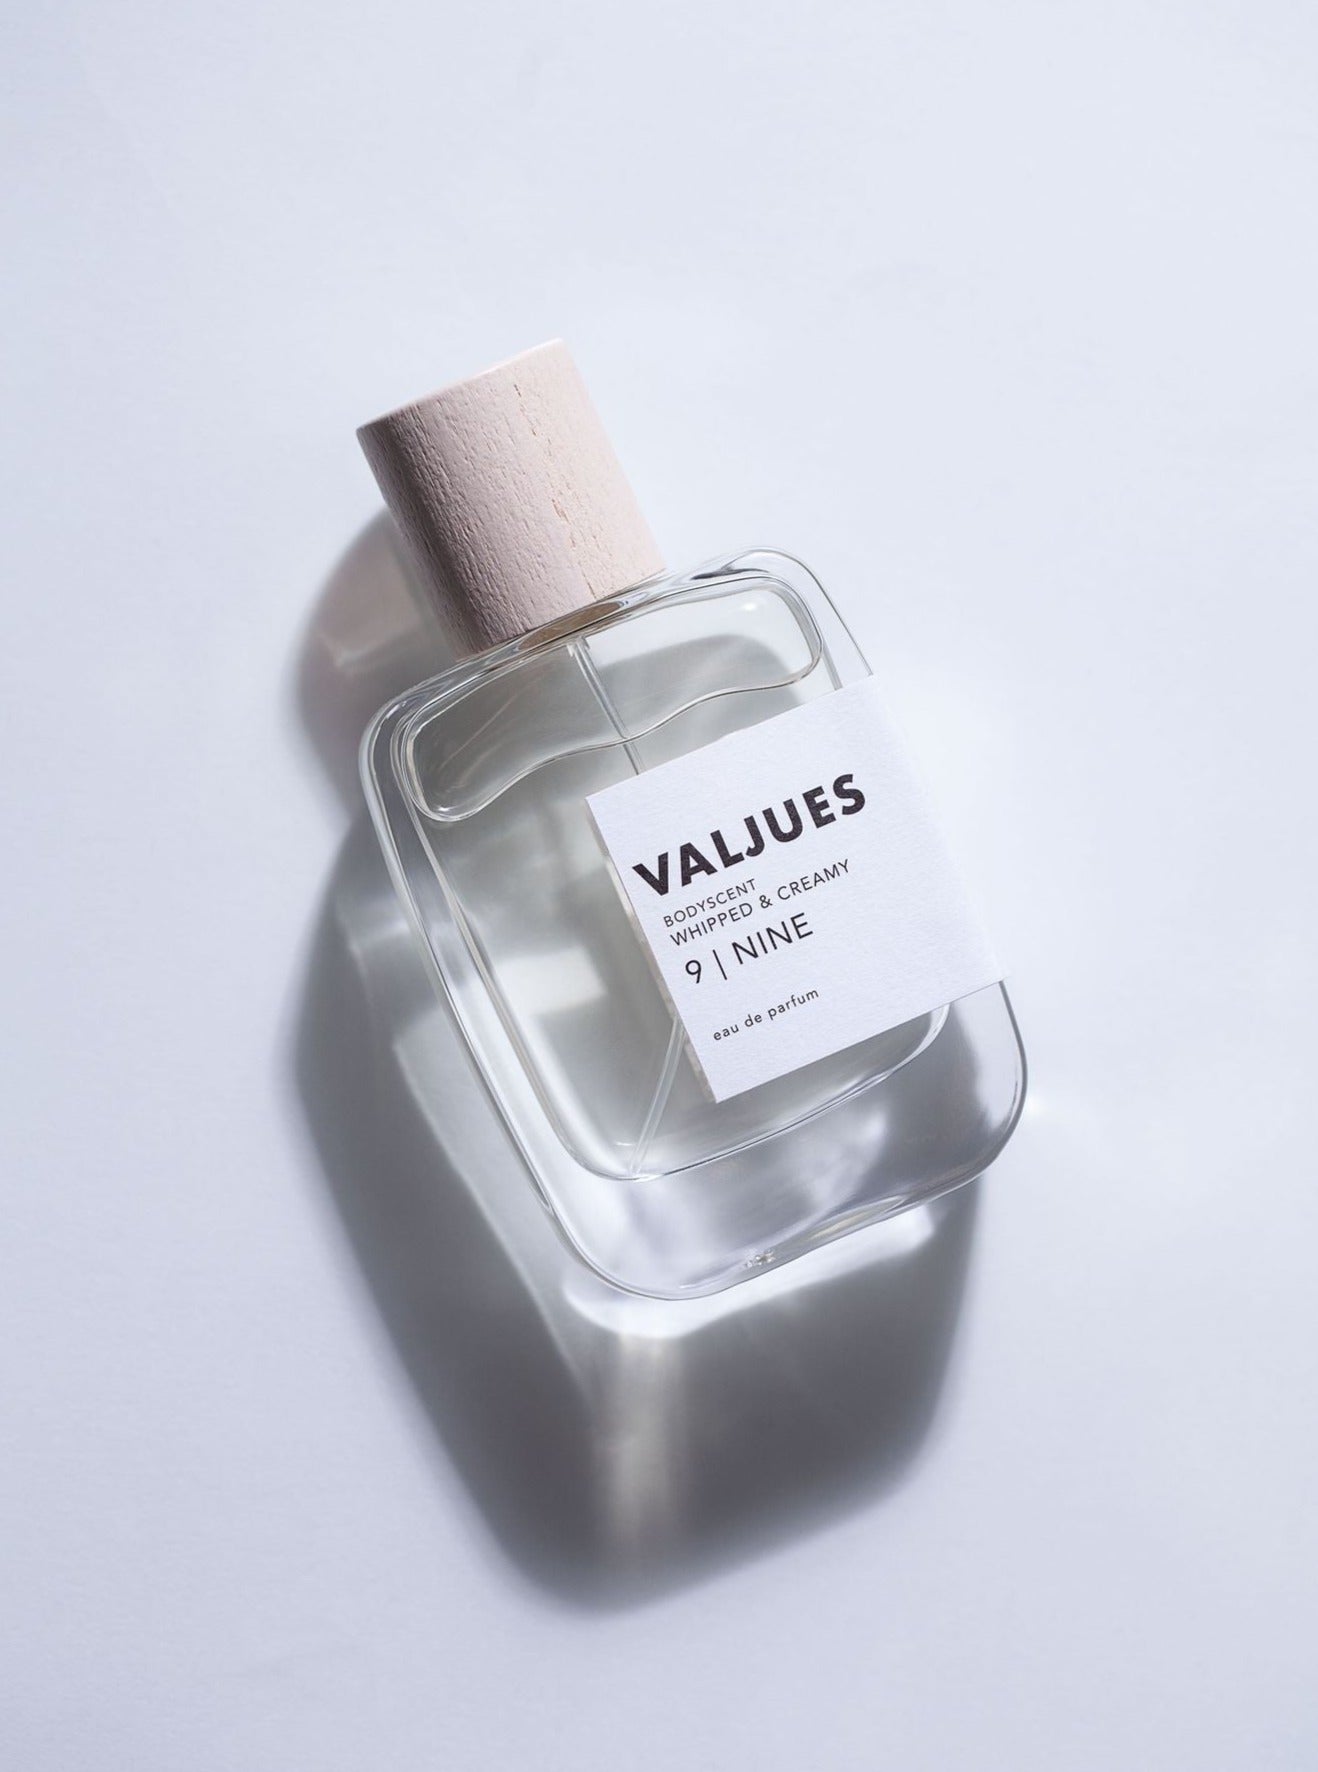 VALJUES - NINE Eau de Parfum 50 ml